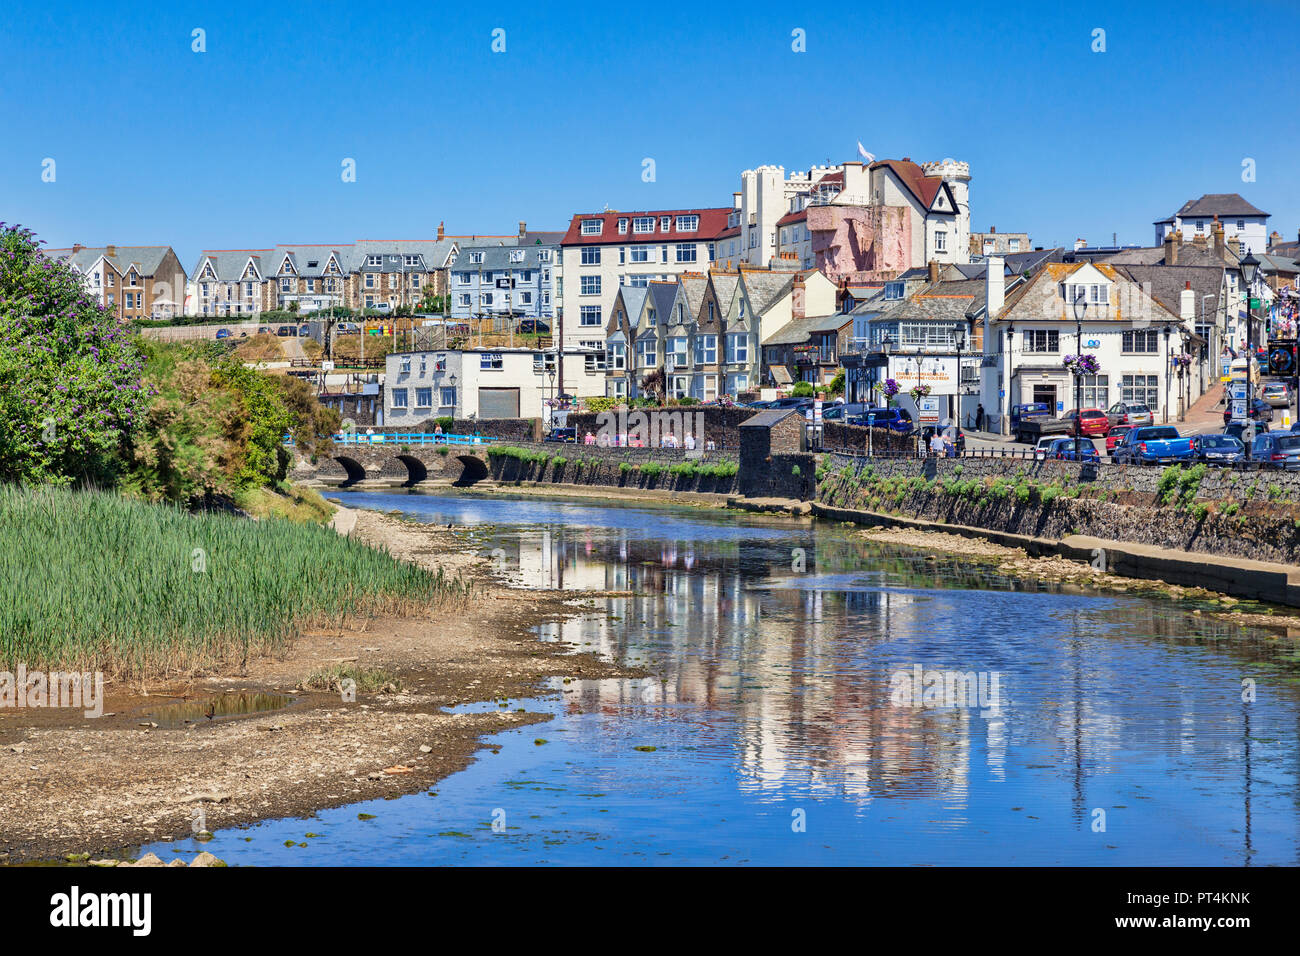 Vom 6. Juli 2018: Bude, Cornwall, Großbritannien - Häuser und Geschäfte in der Stadt am Meer, in den Fluss Neet wider, an einem heißen Sommertag. Stockfoto